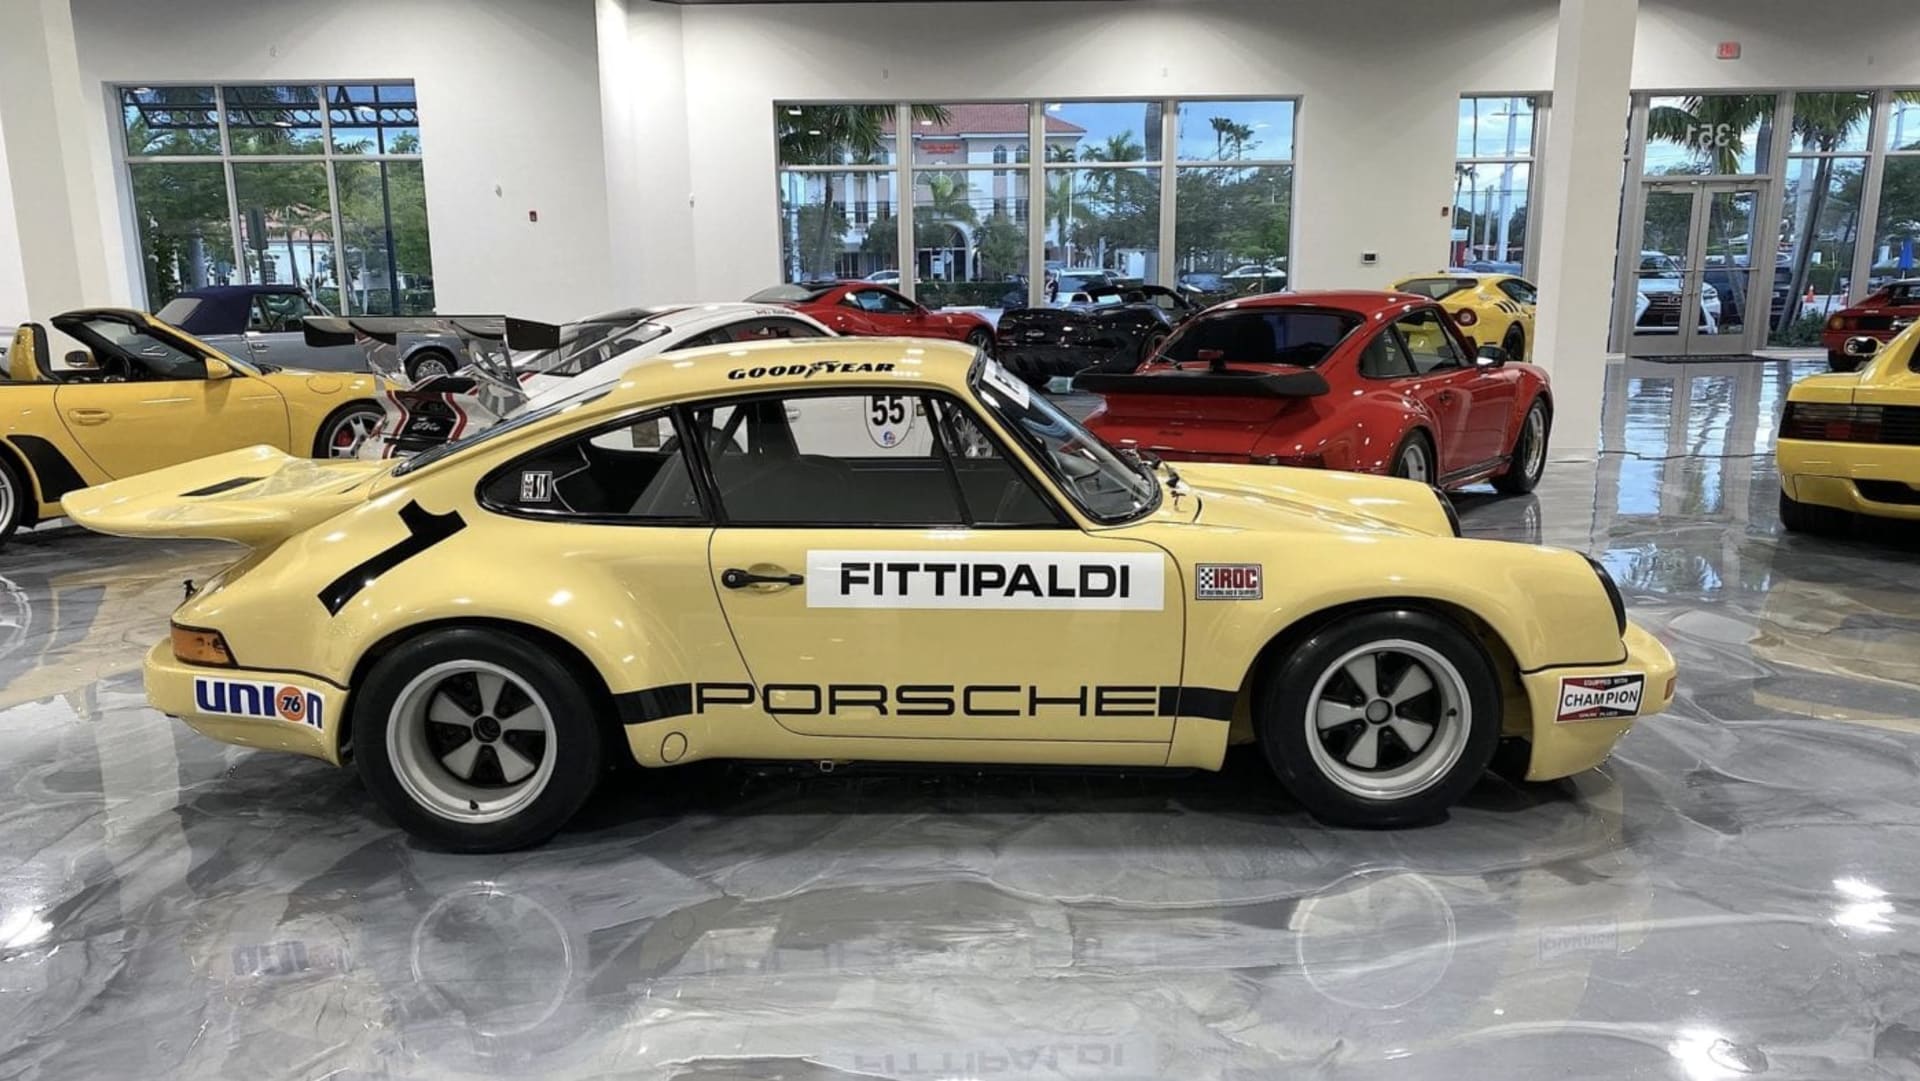 Porsche 911 RSR, které vlastnil Pablo Escobar, v dnešní podobě.